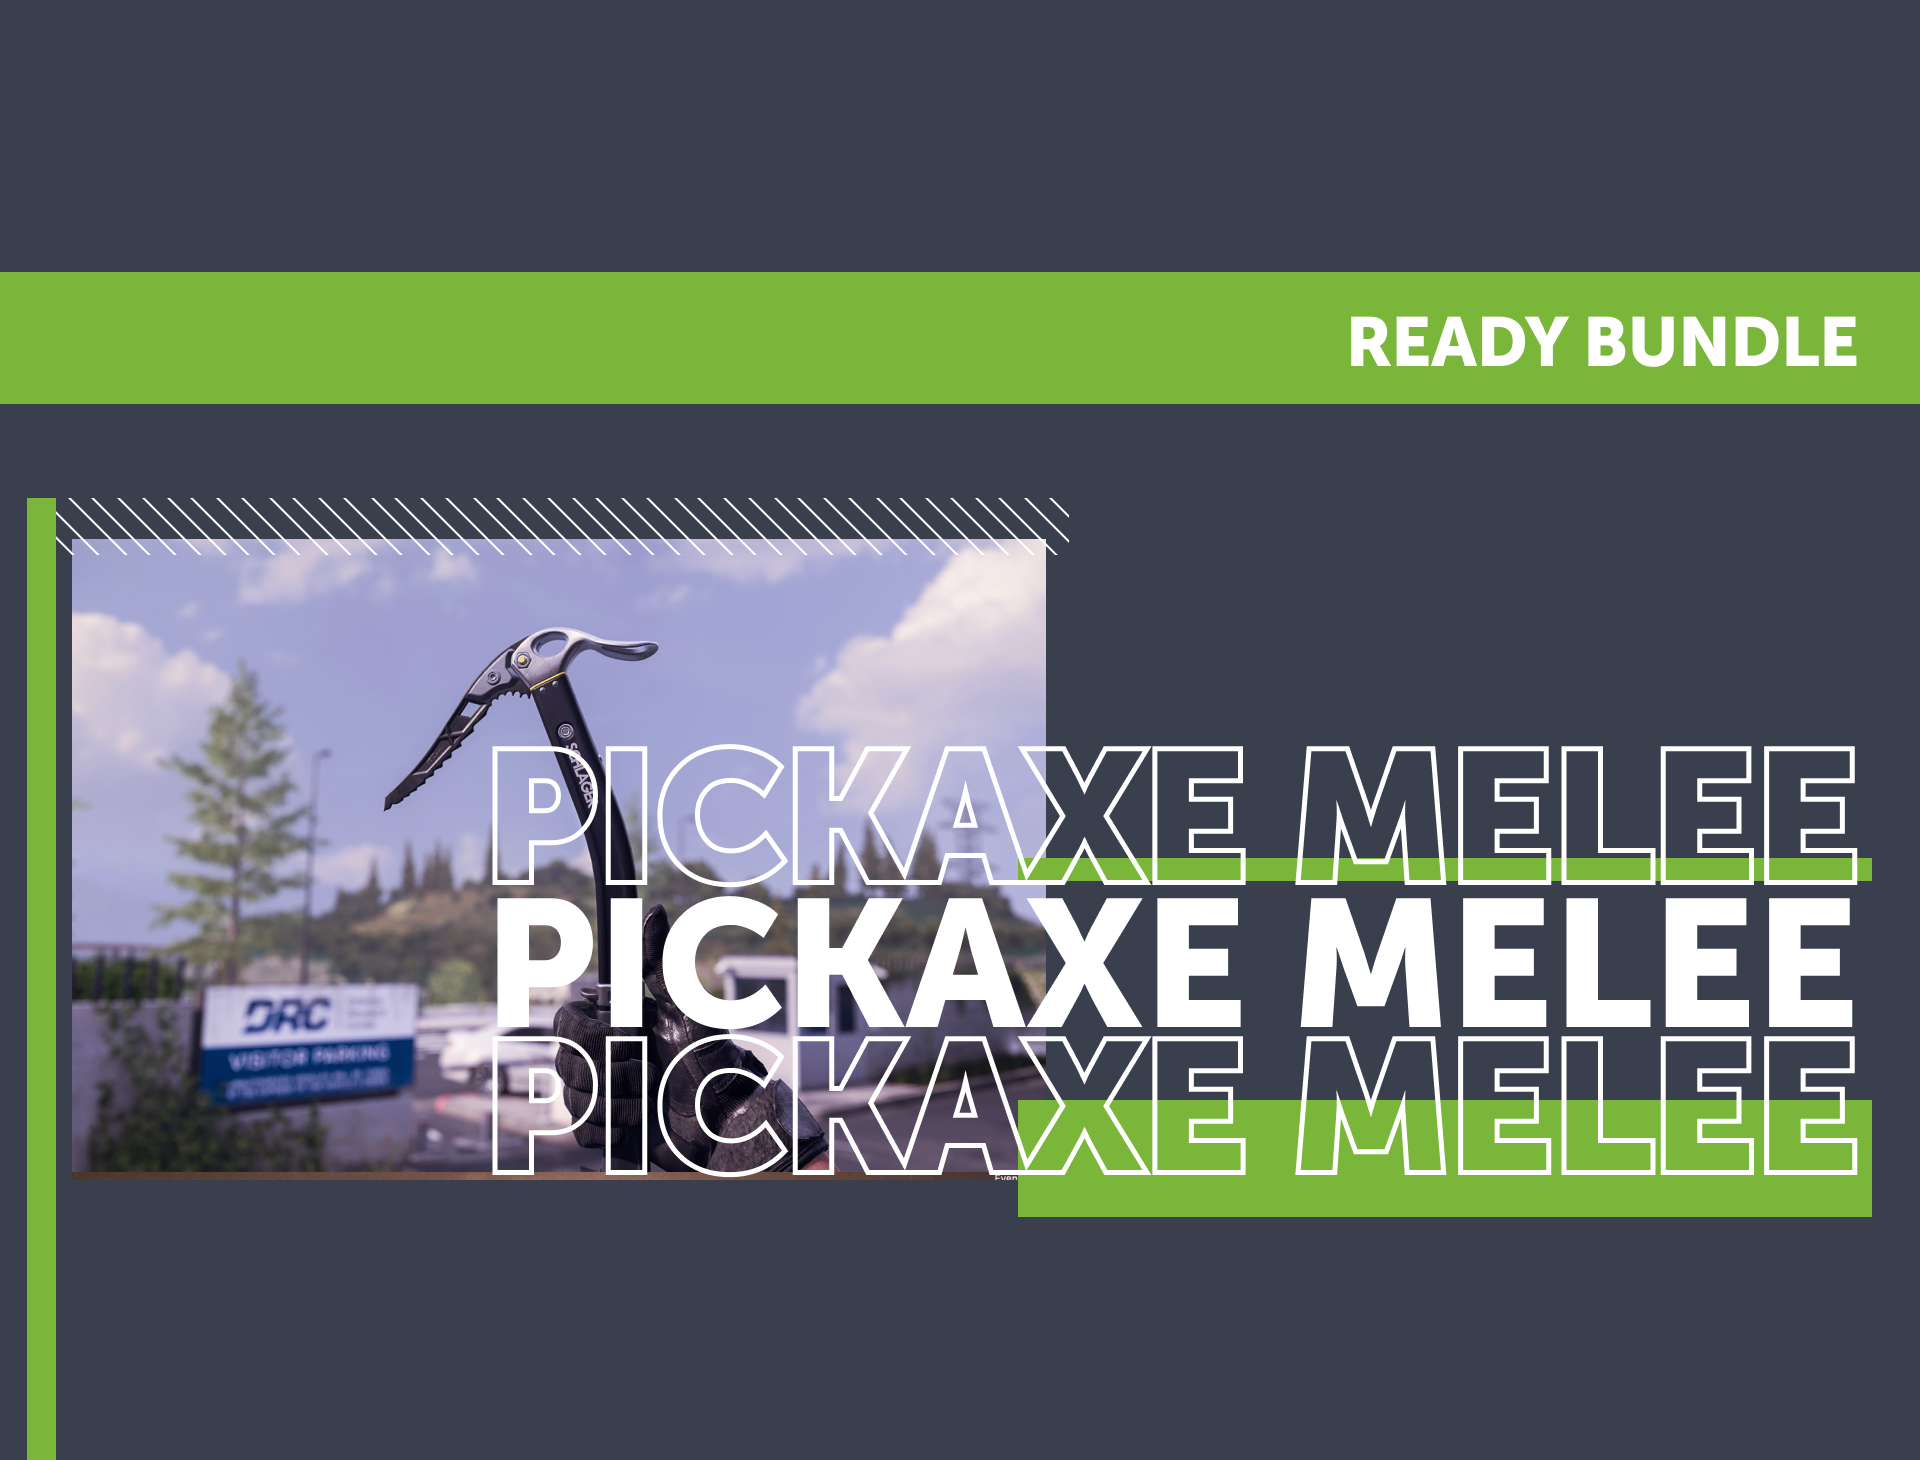 Pickaxe Melee Ready Bunlde